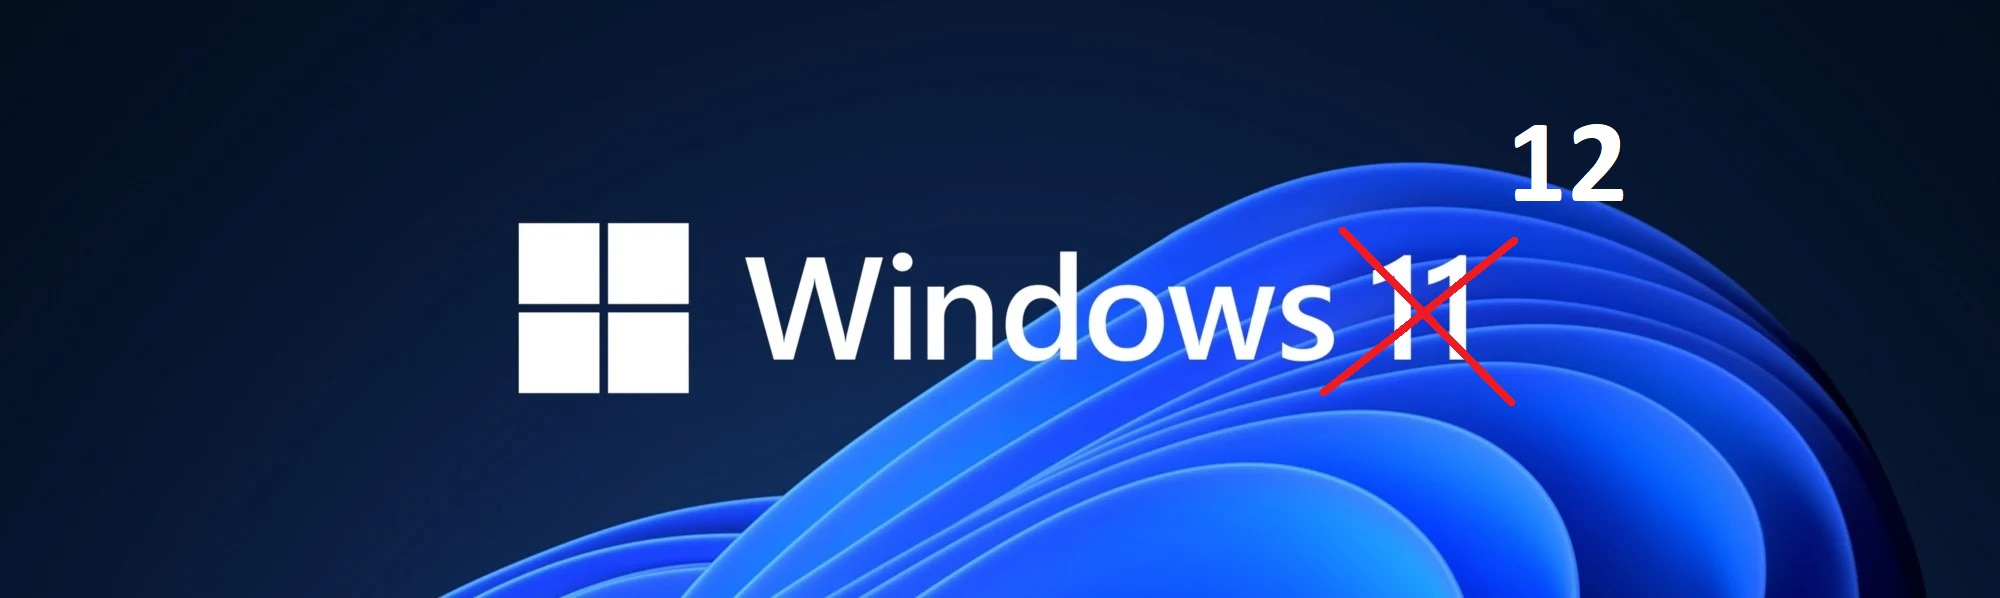 Windows 11 Windows 12